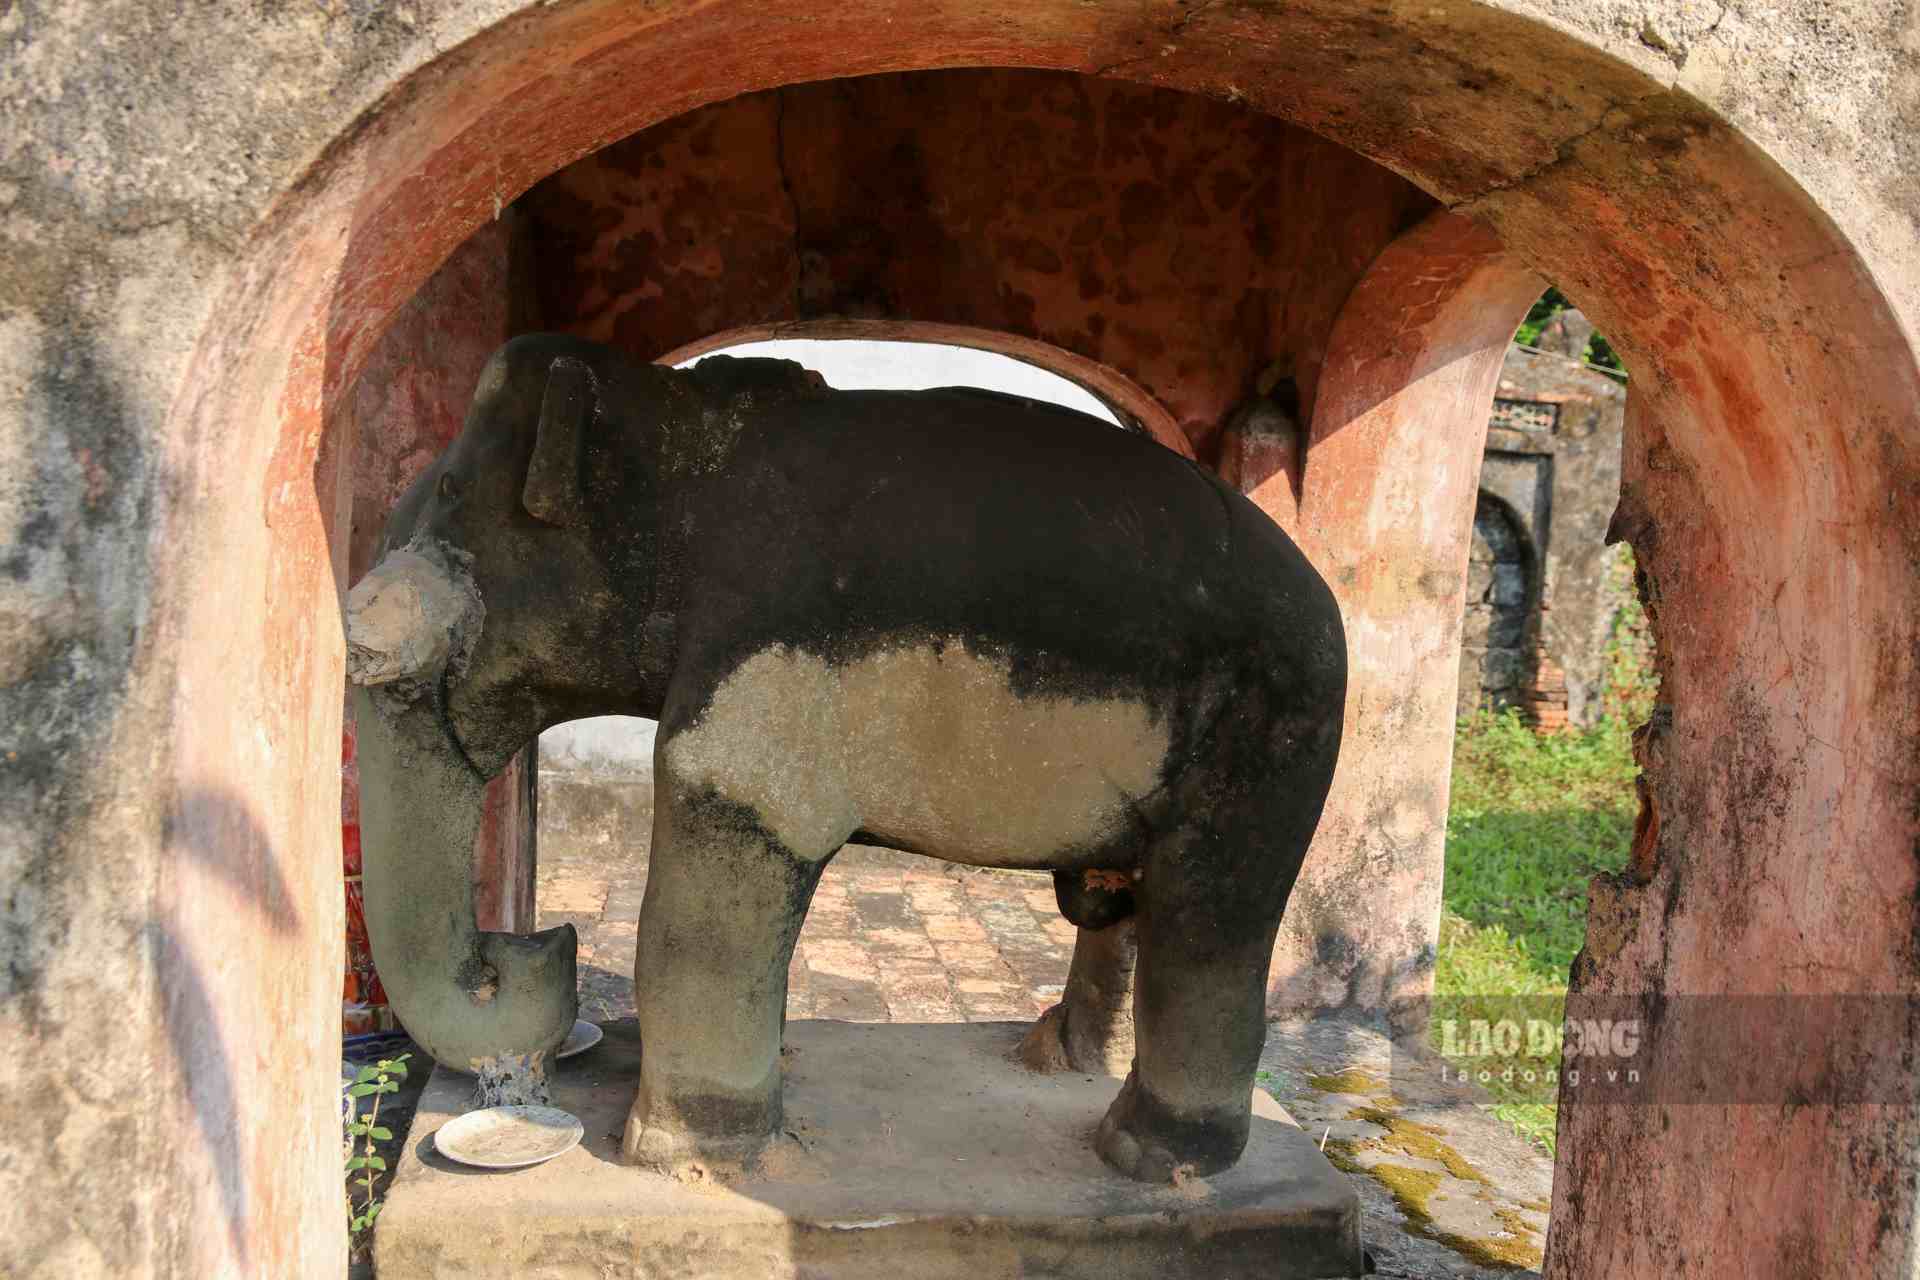 Không những mang tính lễ nghi và tâm linh, việc cho voi uống nước tại Hồ Điện là để hy vọng con voi được tăng thêm sức mạnh và may mắn trong các trận đấu.